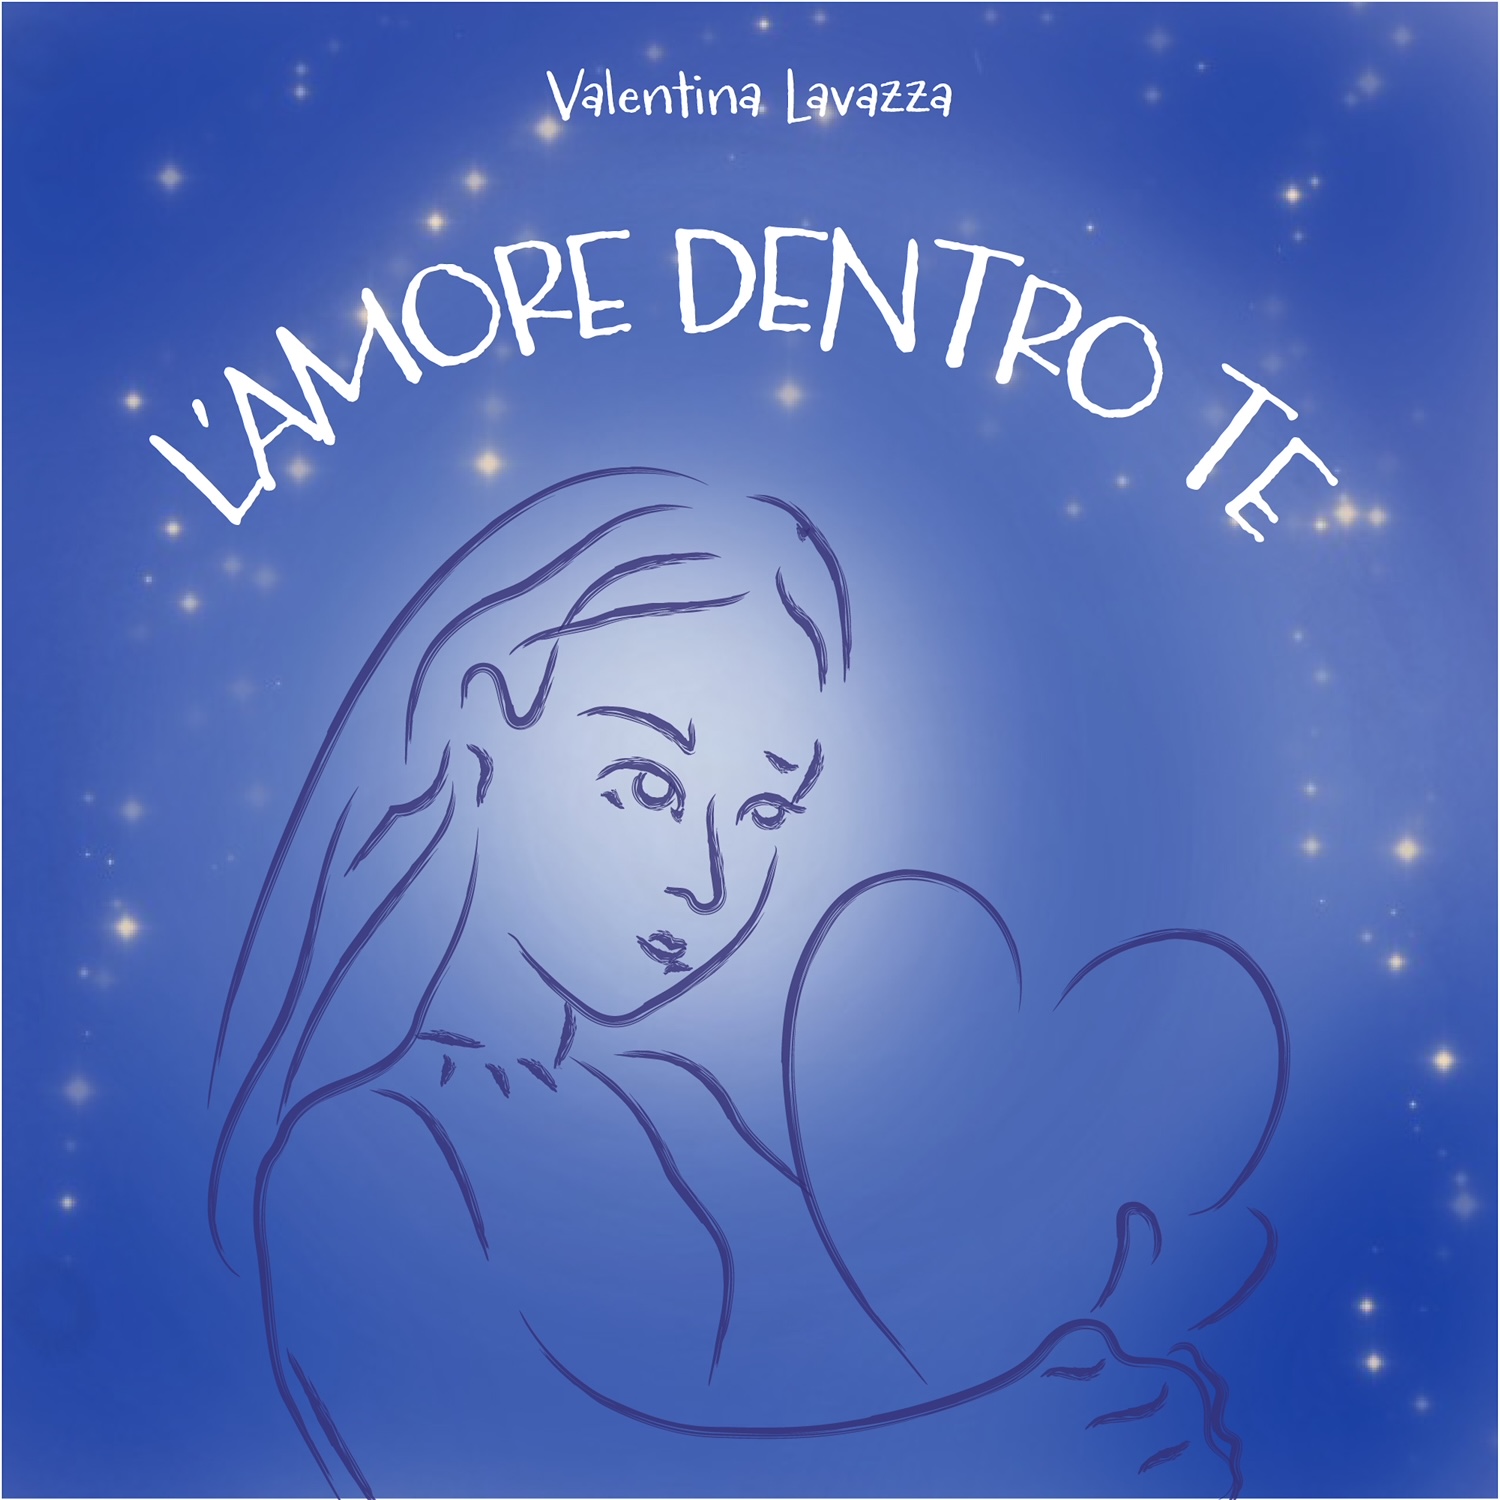 Valentina Lavazza approda nella musica con “L’amore dentro te”